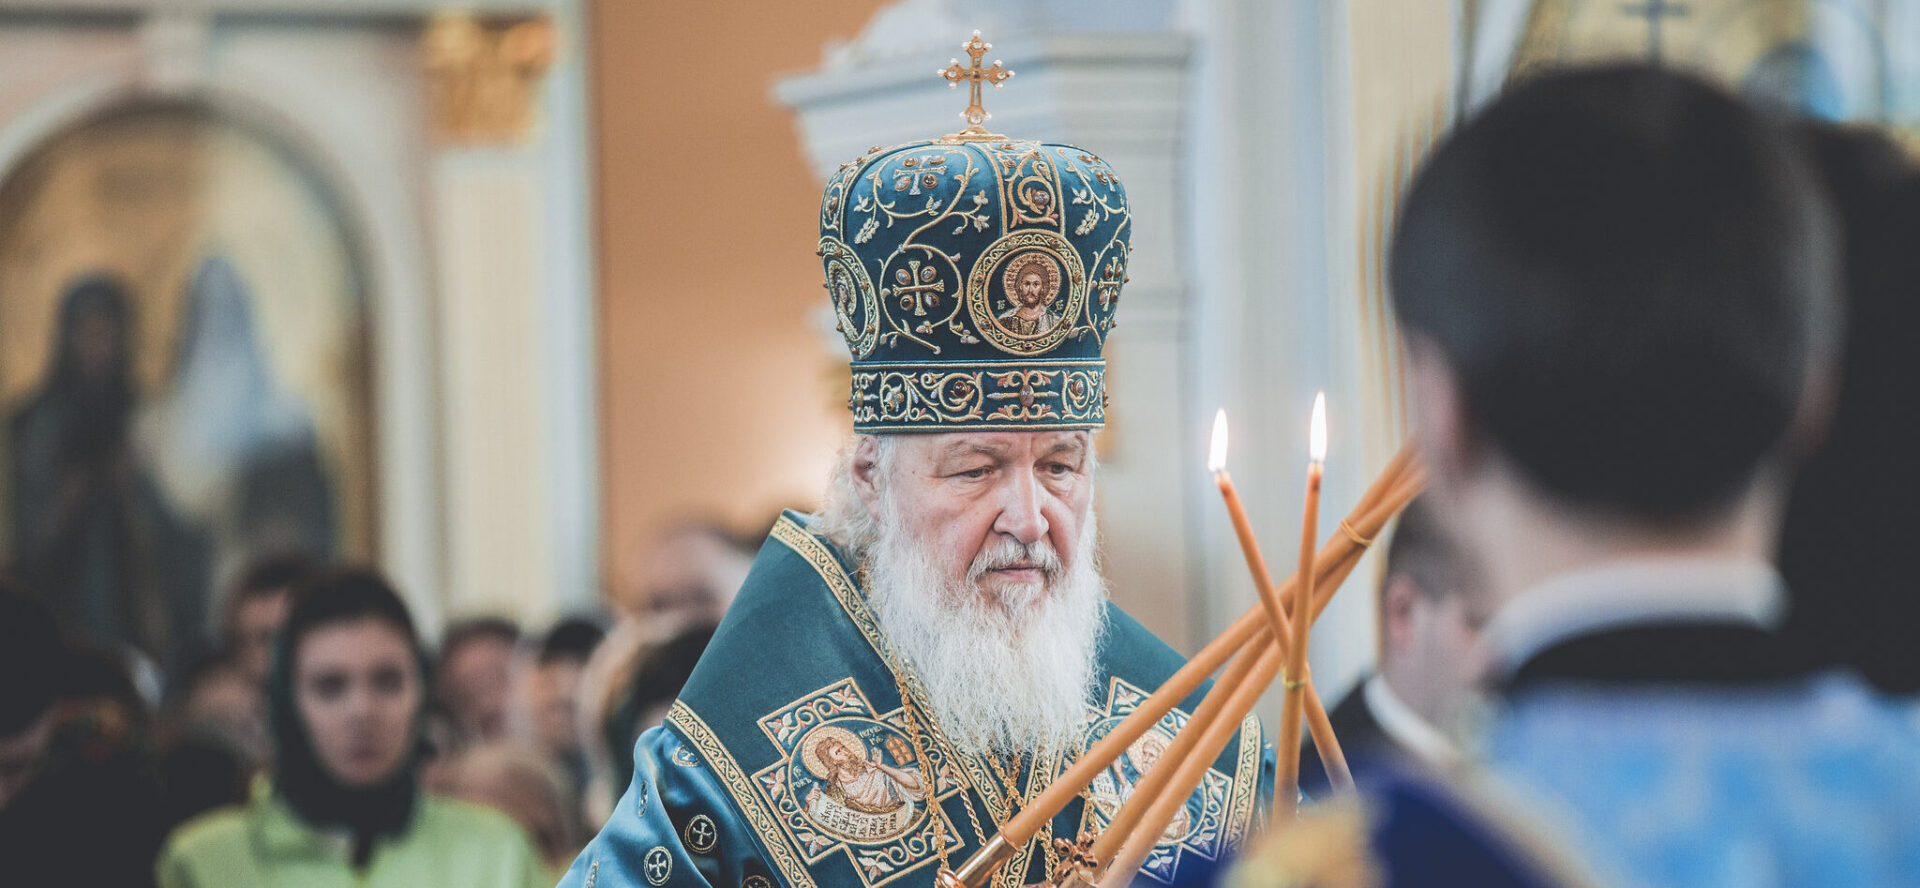 Le patriarche de Moscou Cyrille Ier a sollicité le document sur Fiducia supplicans  | © Saint-Petersburg Theologian/Flickr/CC BY-ND 2.0